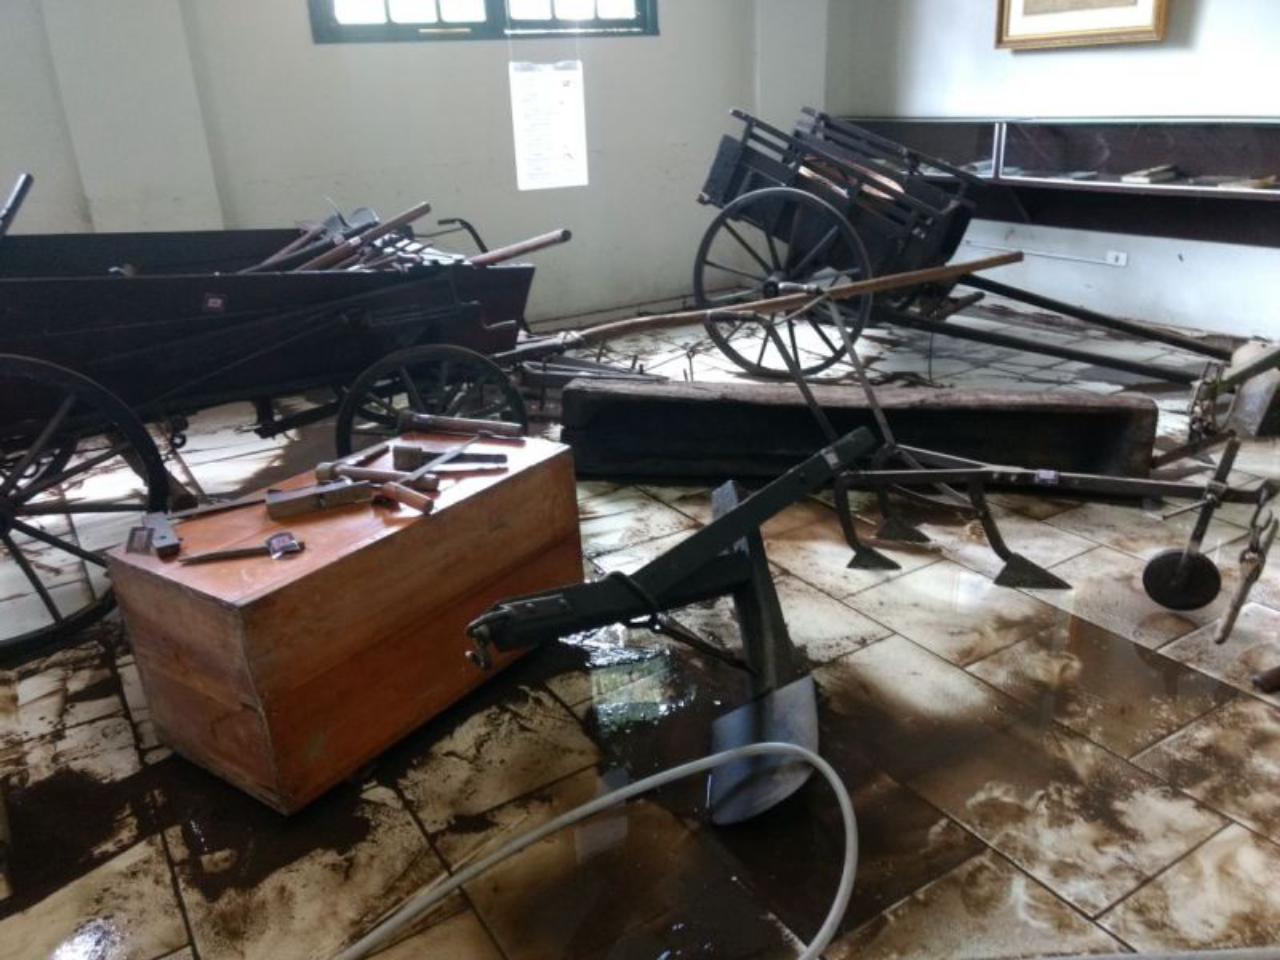 Água e lodo invadiram as instalações do museu devido à forte chuva. Foto: Márcio Assad / Arquivo Pessoal